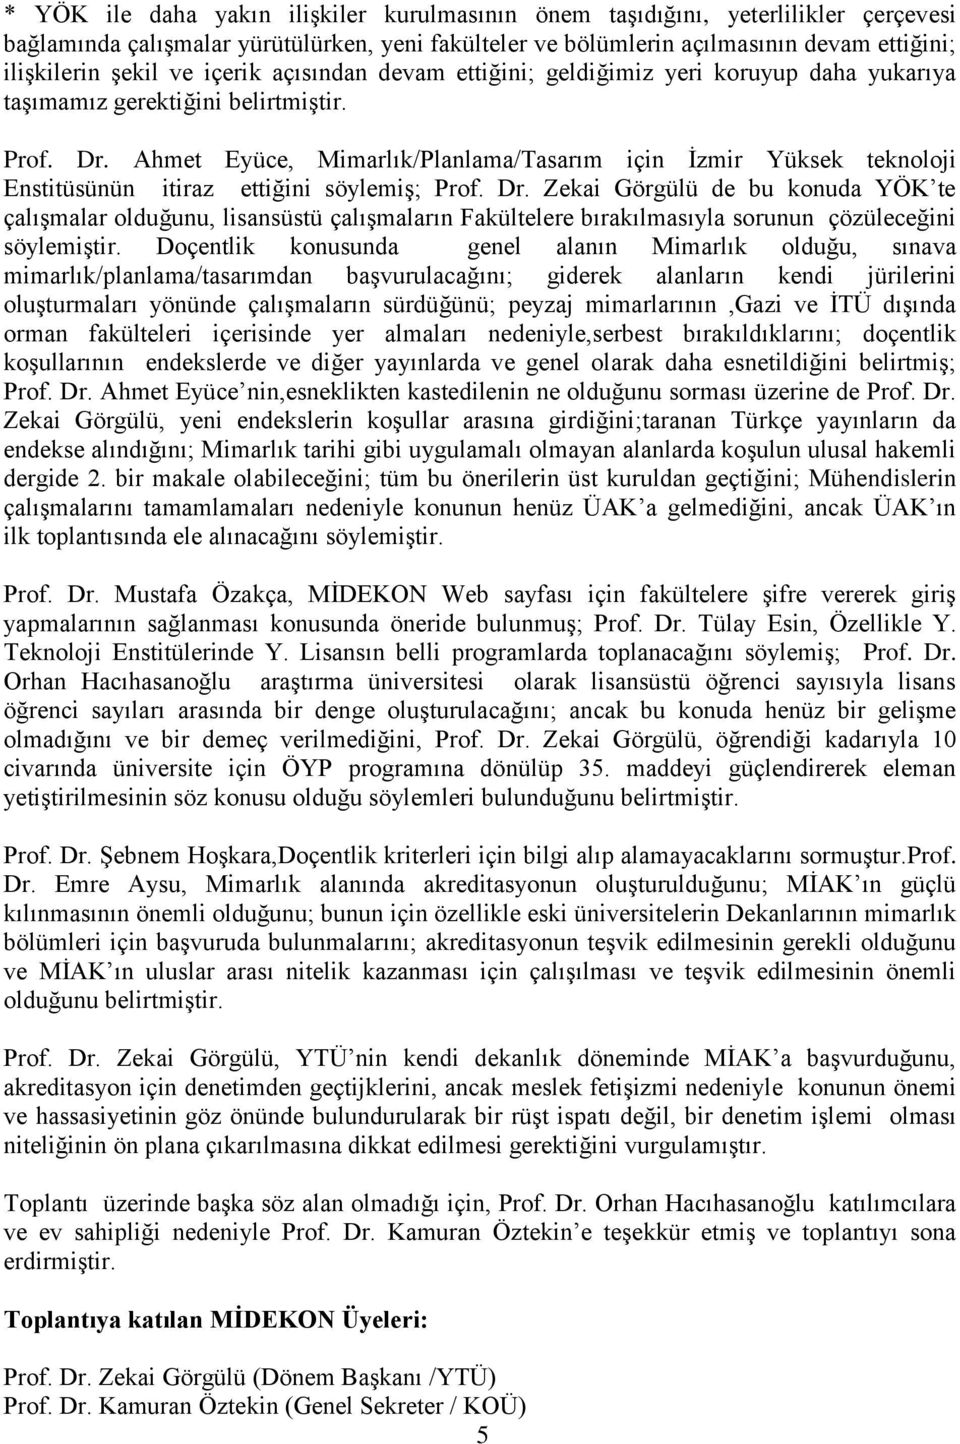 Ahmet Eyüce, Mimarlık/Planlama/Tasarım için İzmir Yüksek teknoloji Enstitüsünün itiraz ettiğini söylemiş; Prof. Dr.